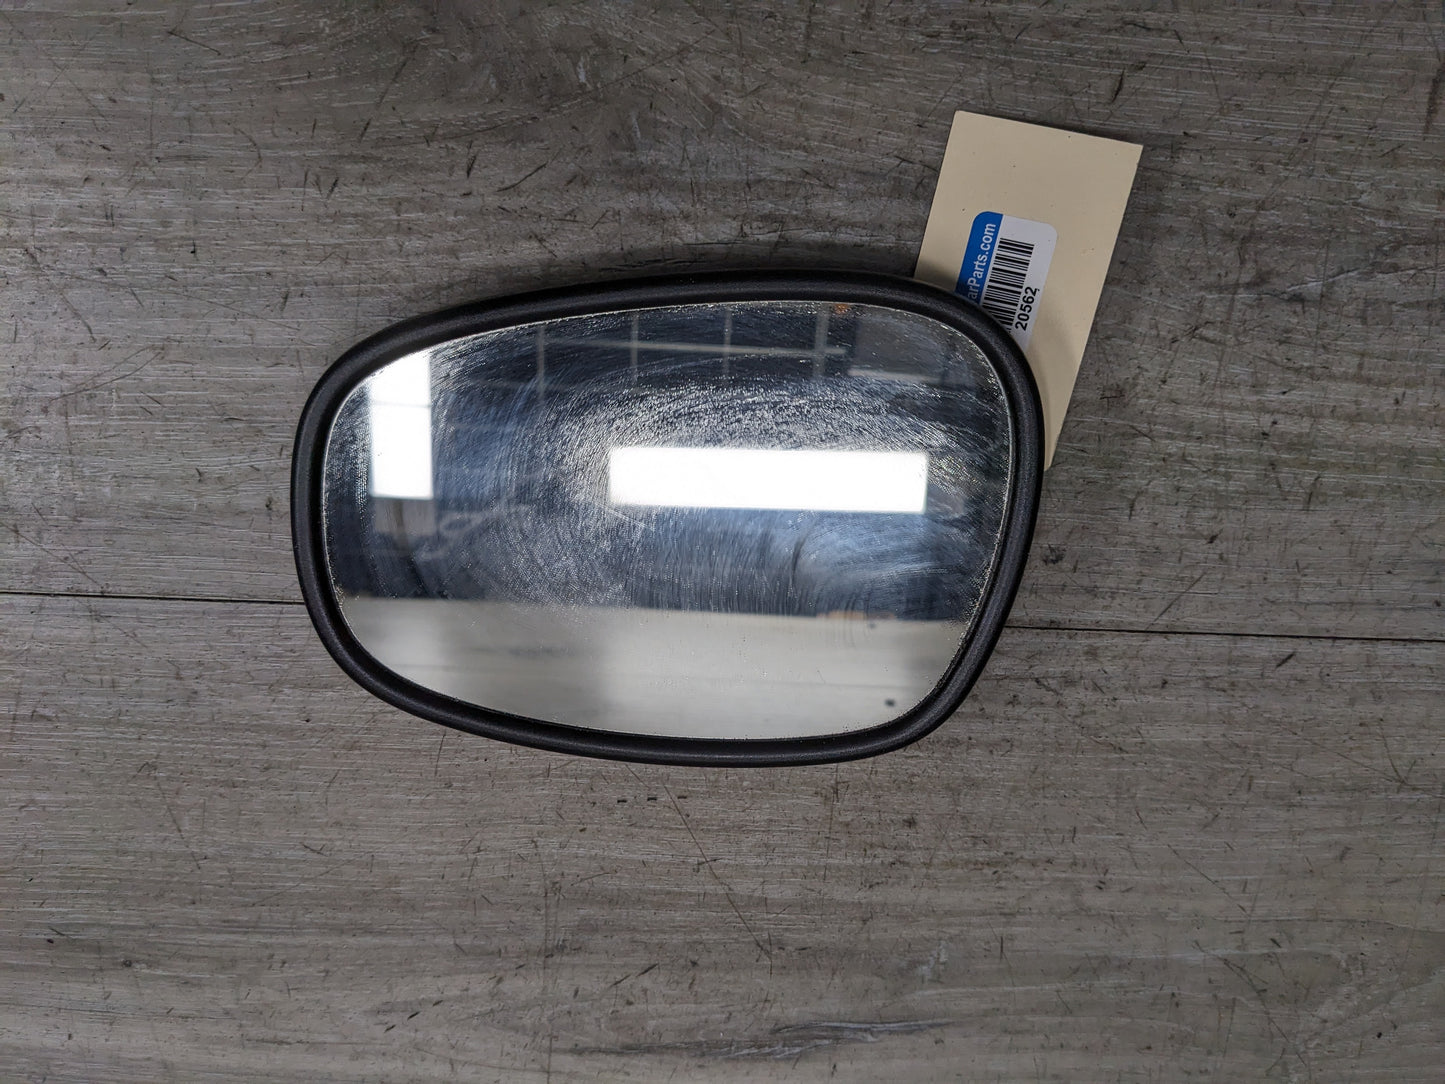 09-13 OEM BMW E82 E88 E90 E92 E93 Side View Mirror Glass Left Driver Heated